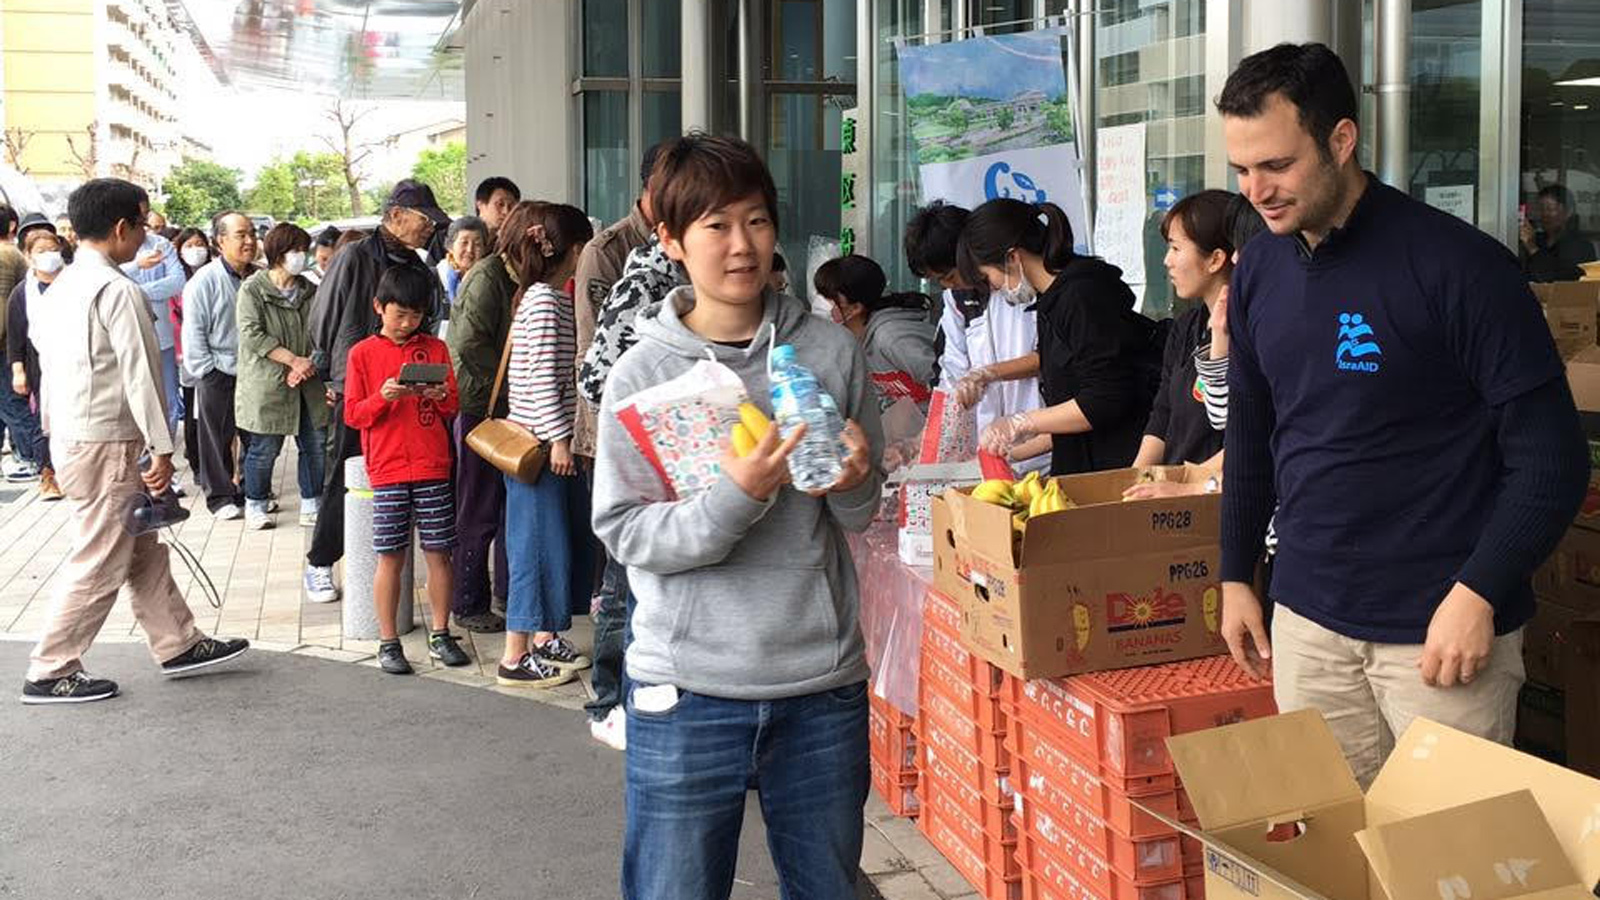 Israeli aid volunteers distribute supplies to Japanese earthquake survivors. Photo via IsraAID